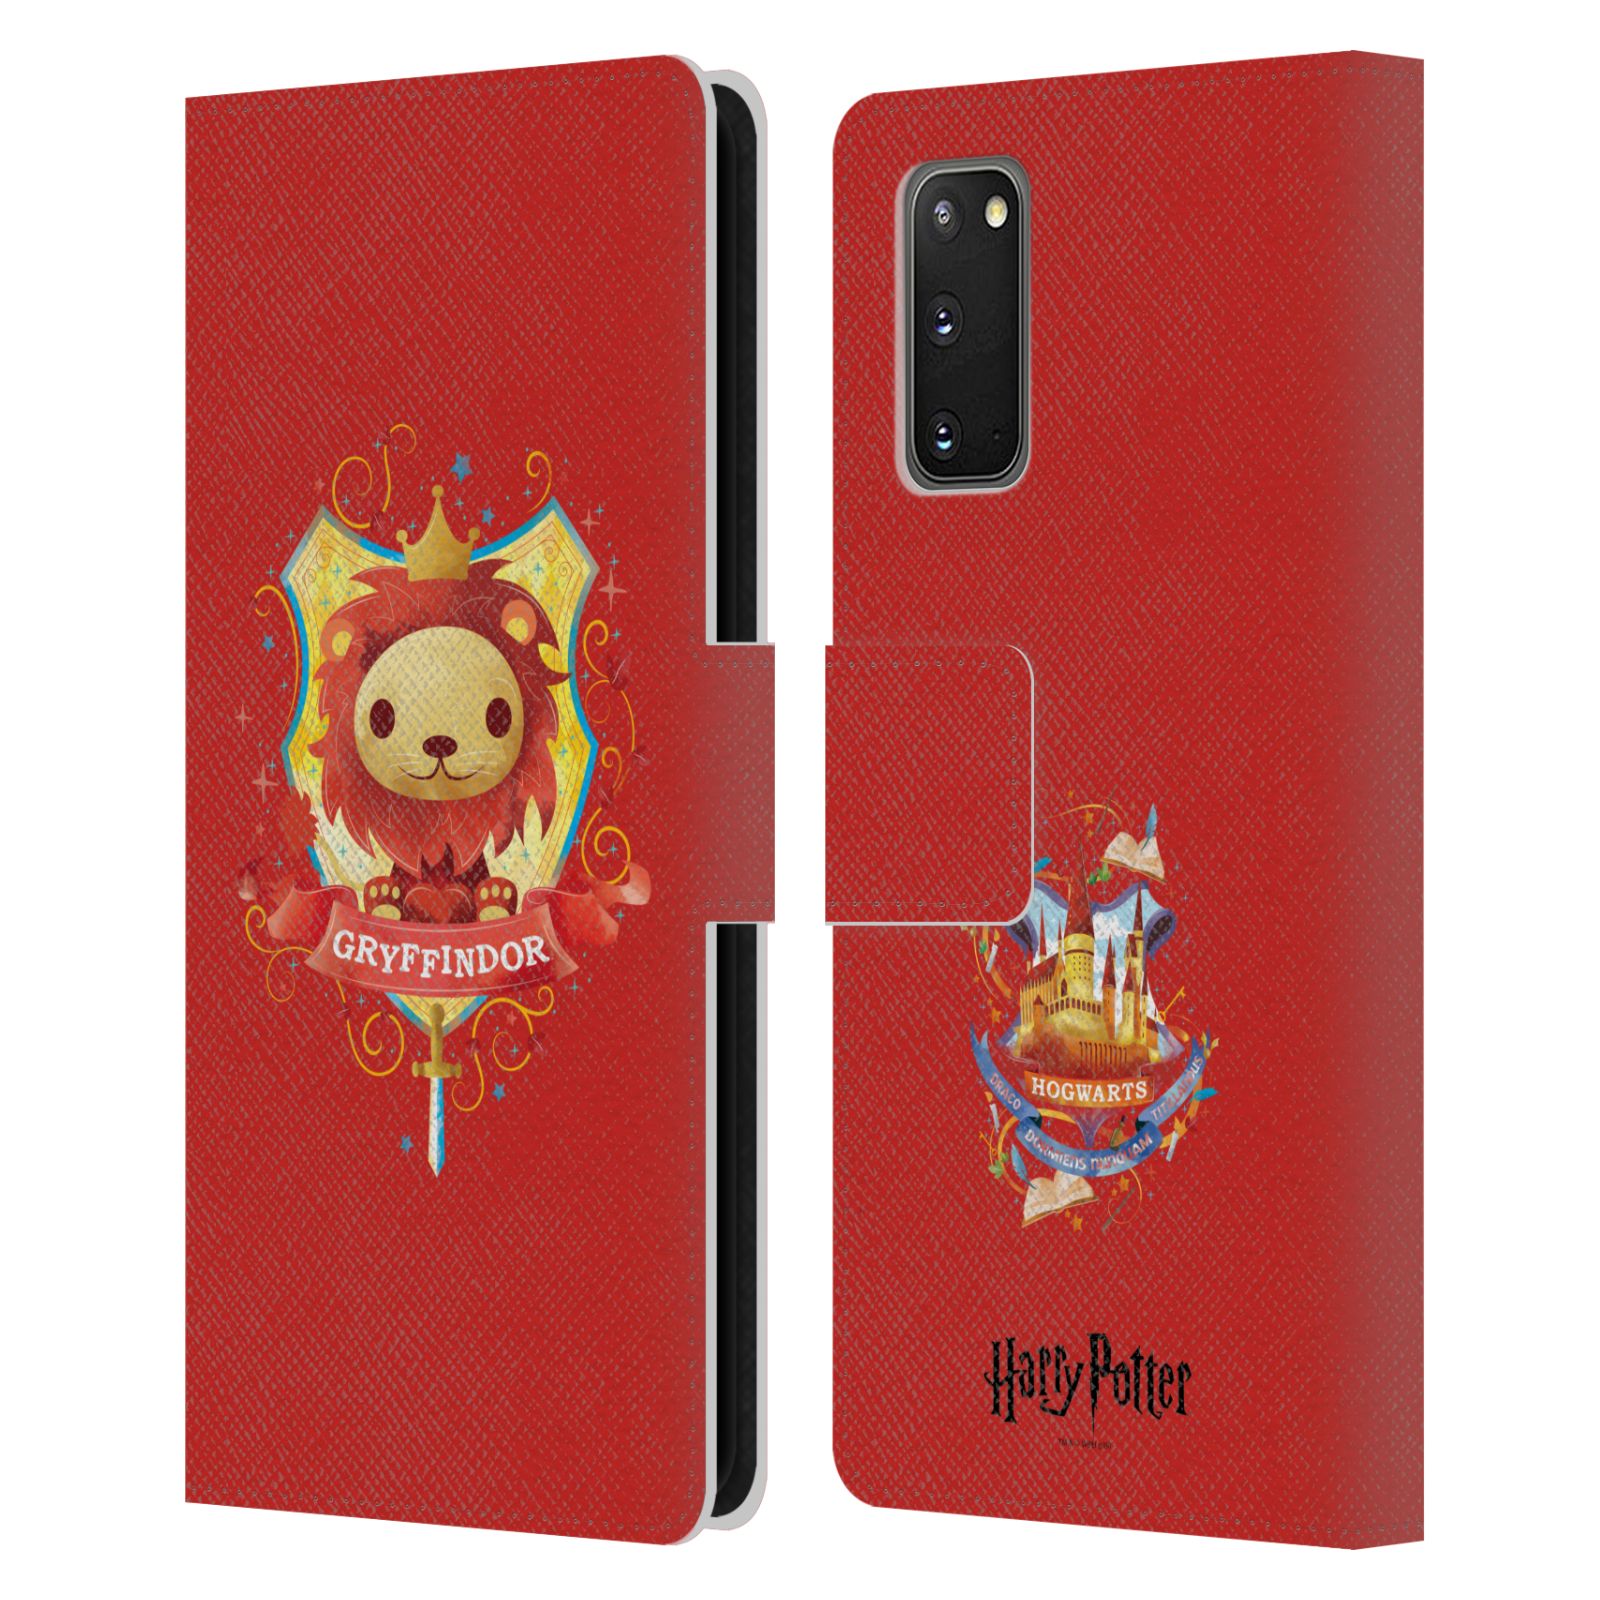 5G 2021 A52s Head Case Designs Licenza Ufficiale Harry Potter Unicorno Deathly Hallows II Cover in Morbido Gel Compatibile con Galaxy A52 